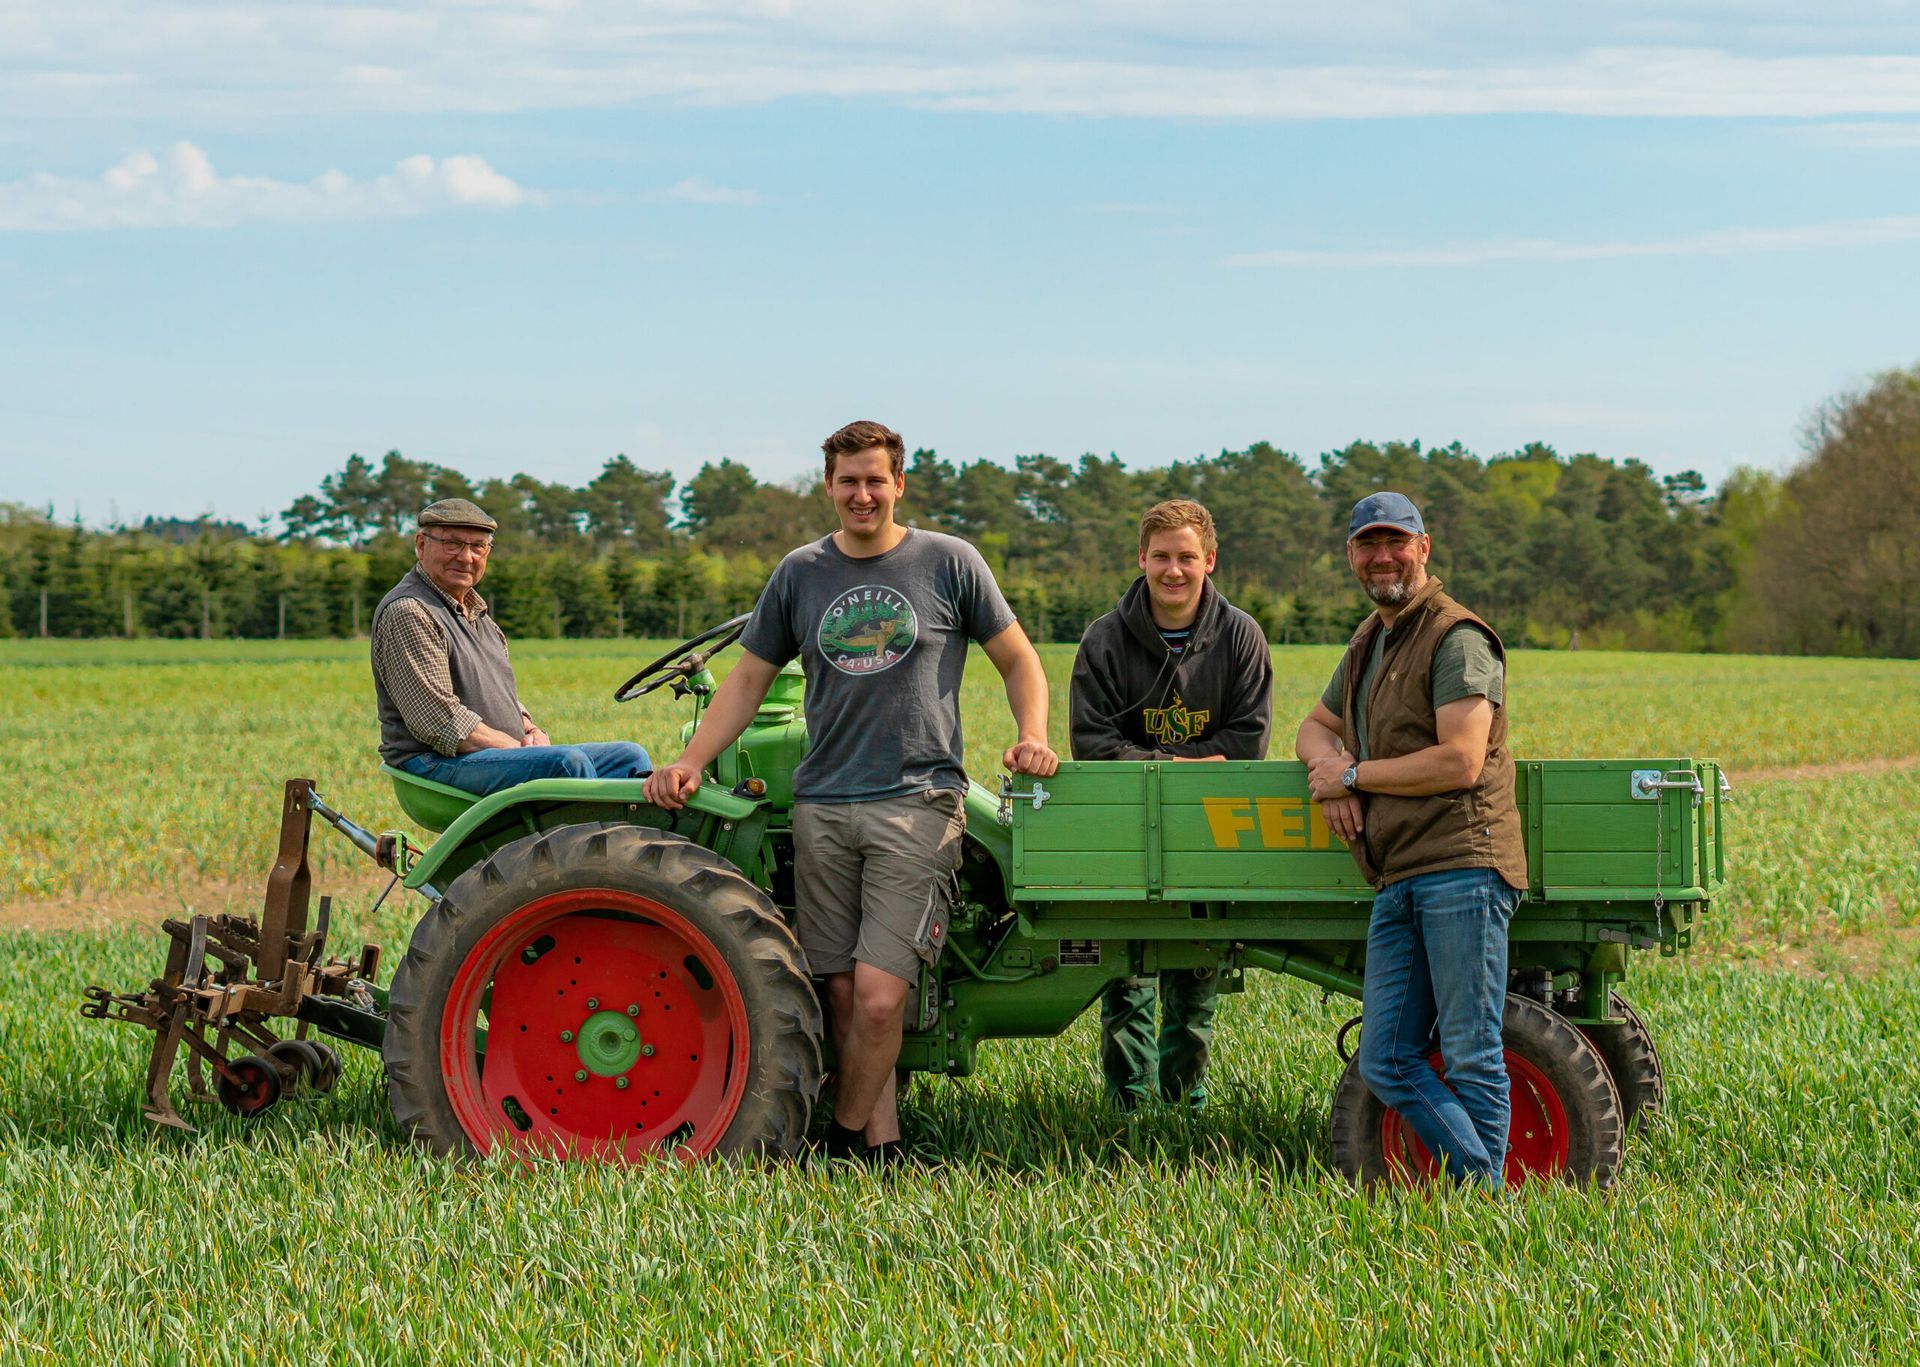 Eine Gruppe von Menschen steht neben einem grünen Traktor auf einem Feld.